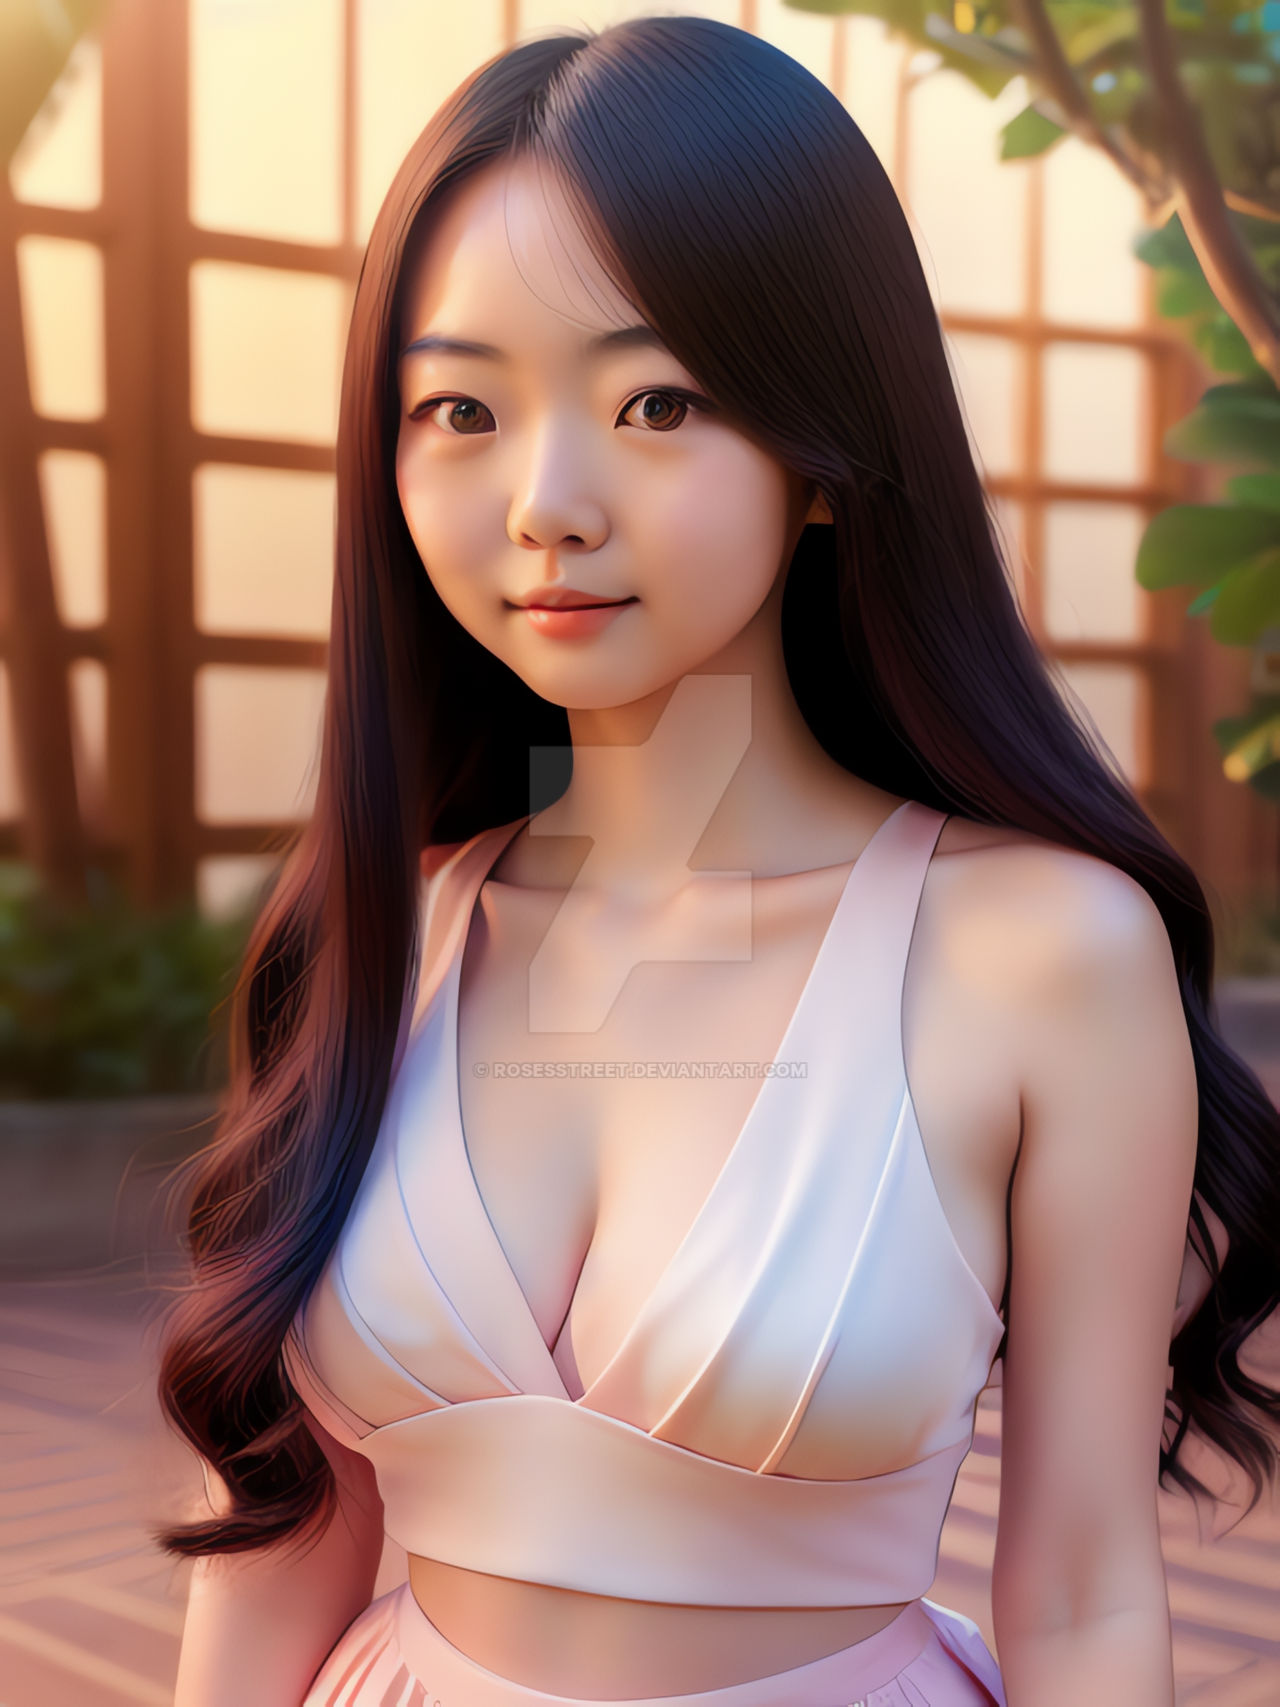 Japanese Girl 30 by RosesStreet on DeviantArt